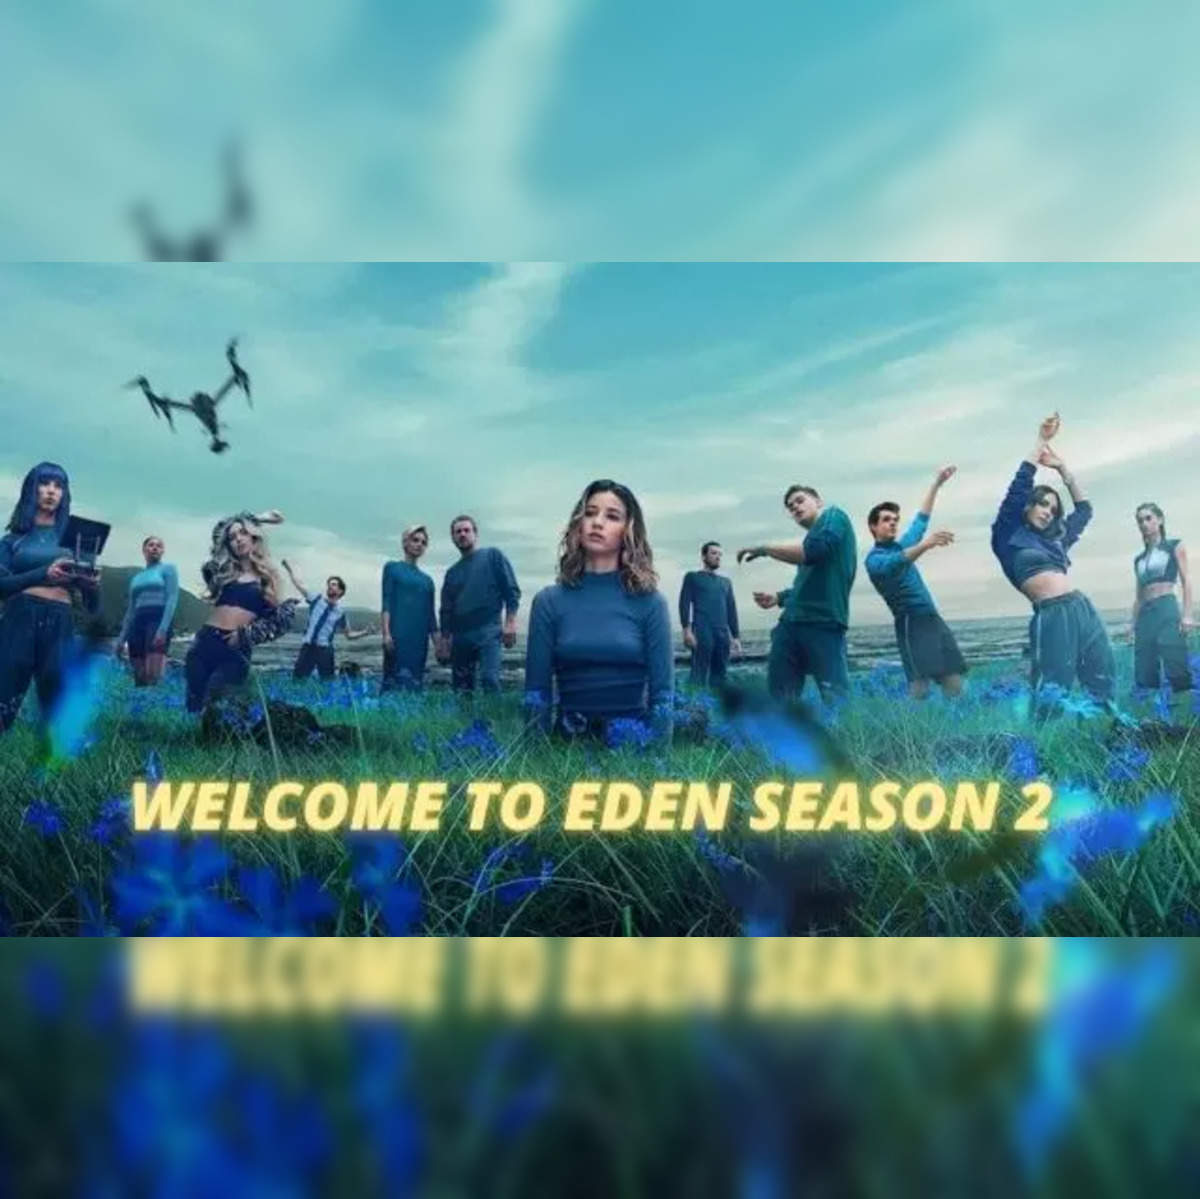 Edens Zero season 2 release date, cast, trailer, plot and more news